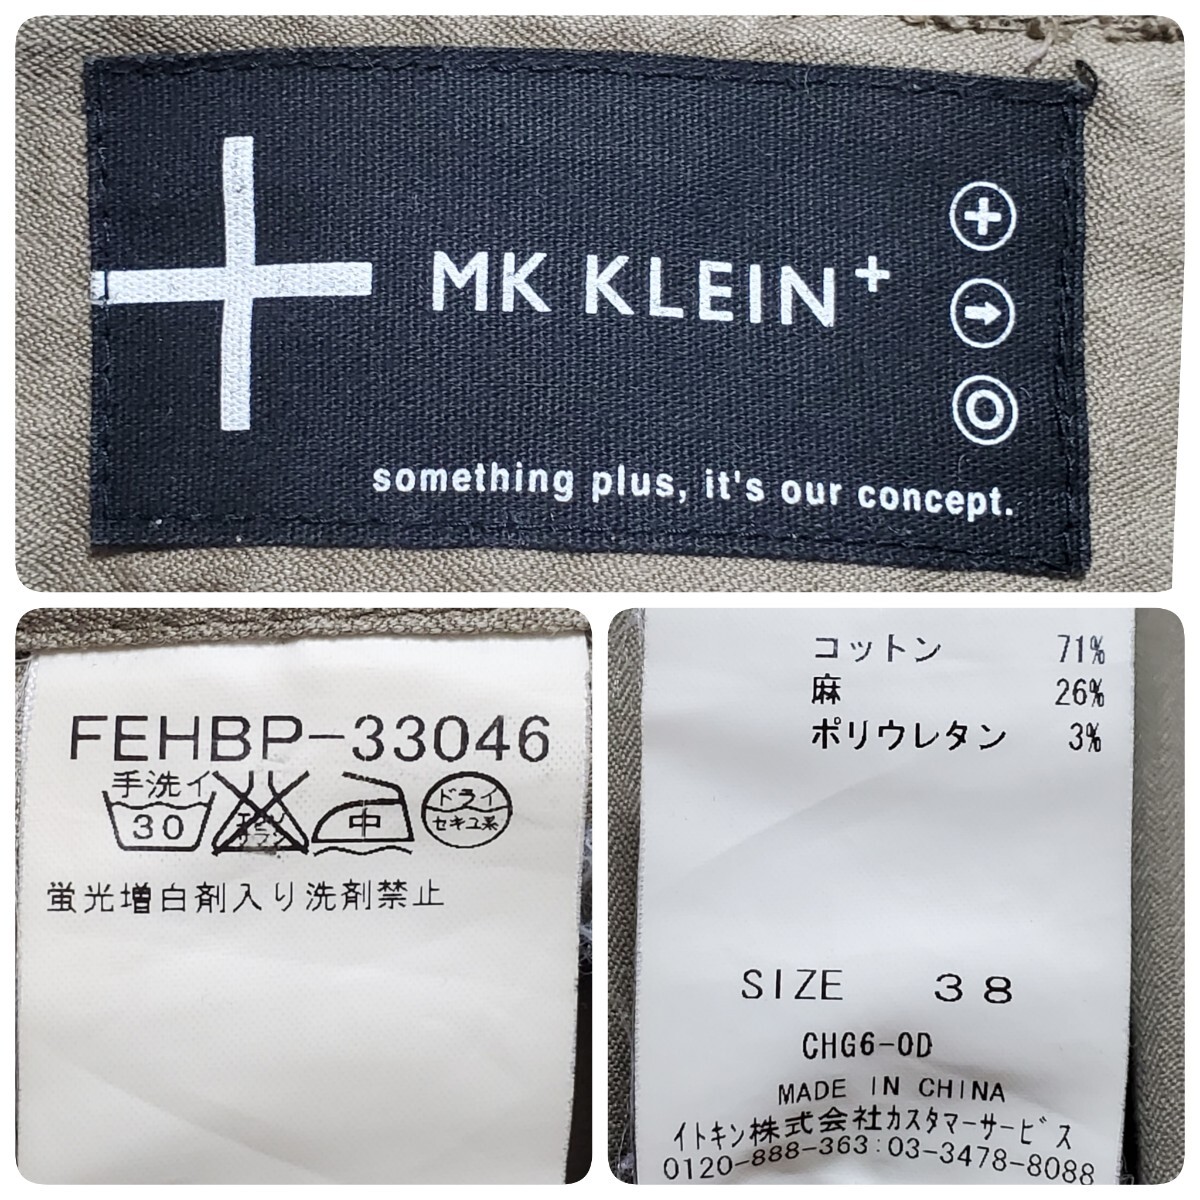 MK KLEIN+ M ke- Michel Klein pryus хаки колени длина юбка размер 38( примерно M размер соответствует )